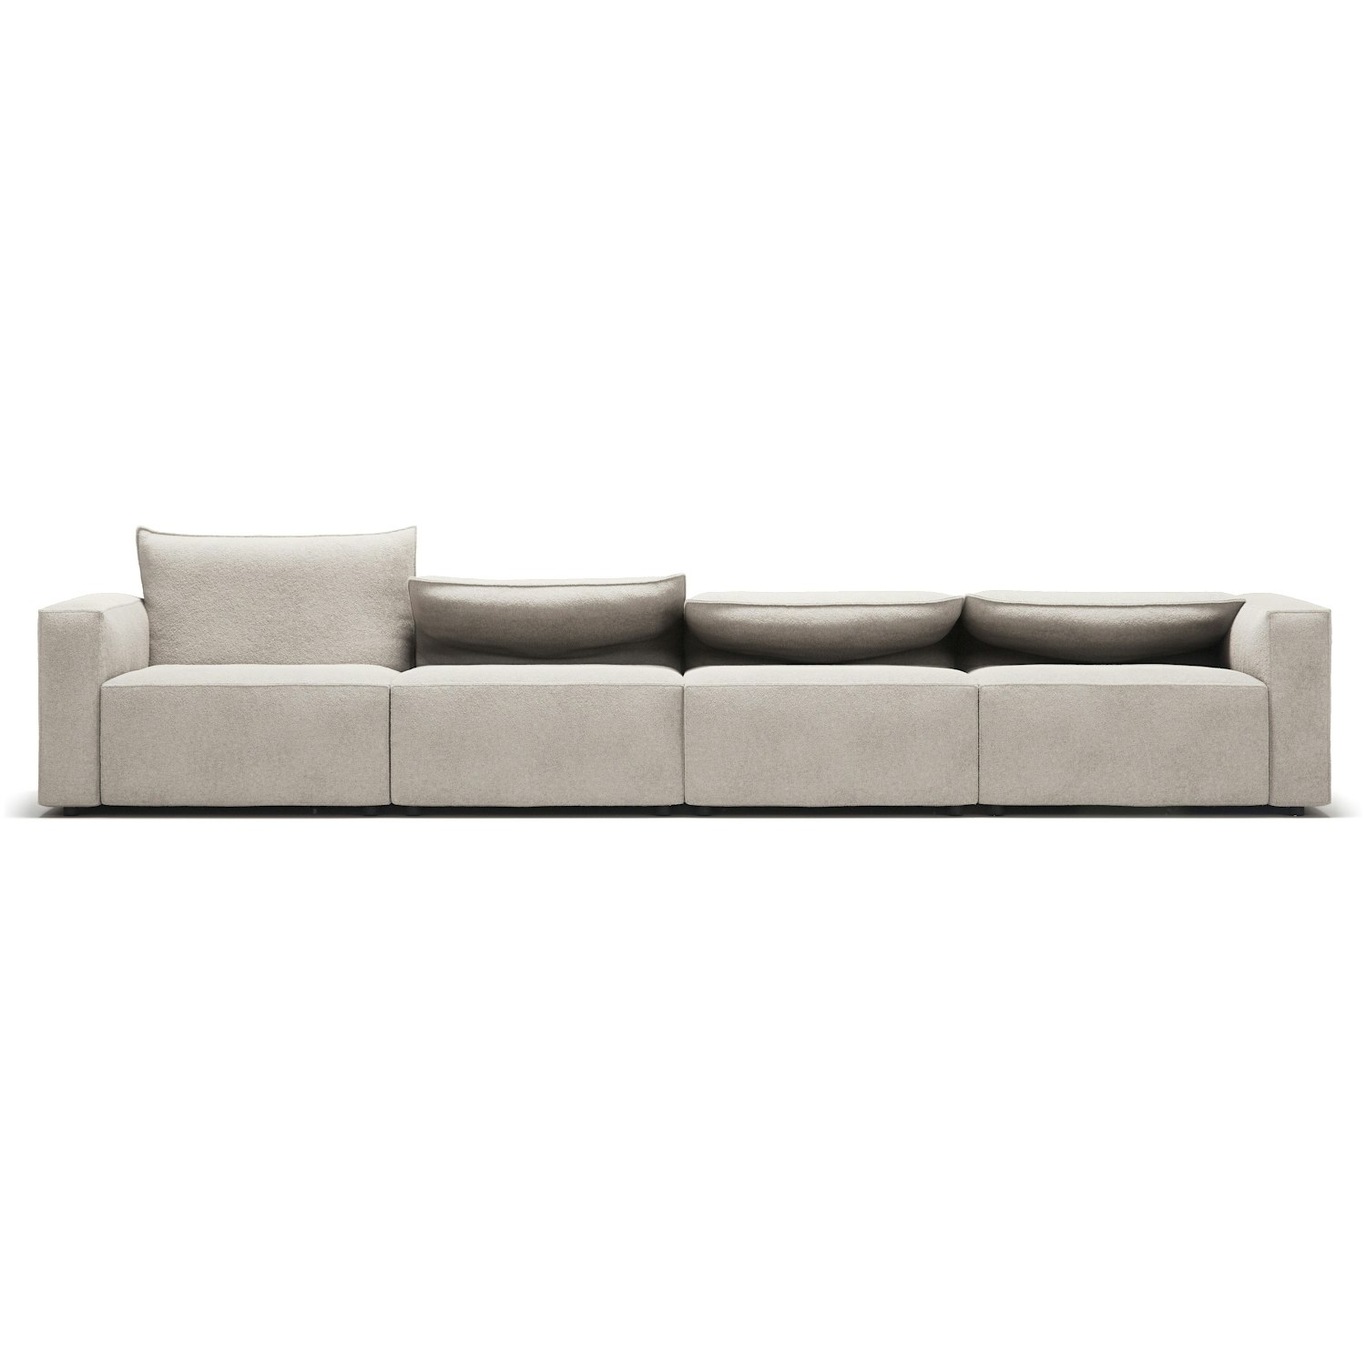 Moore 4-Seater Sofa, Plush Beige